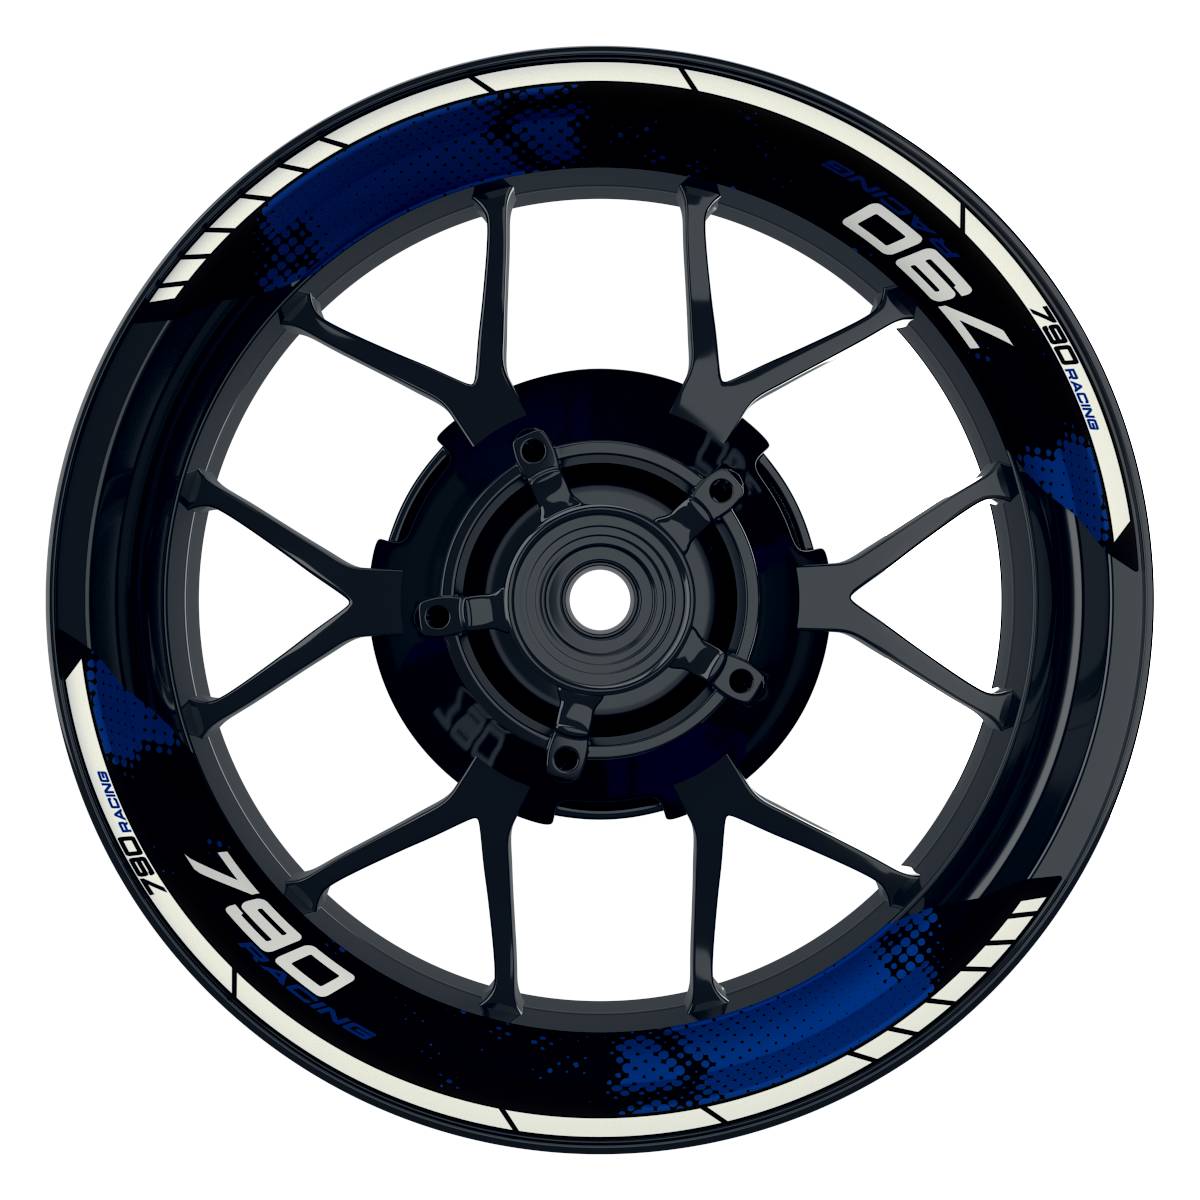 KTM Racing 790 Dots schwarz blau Frontansicht